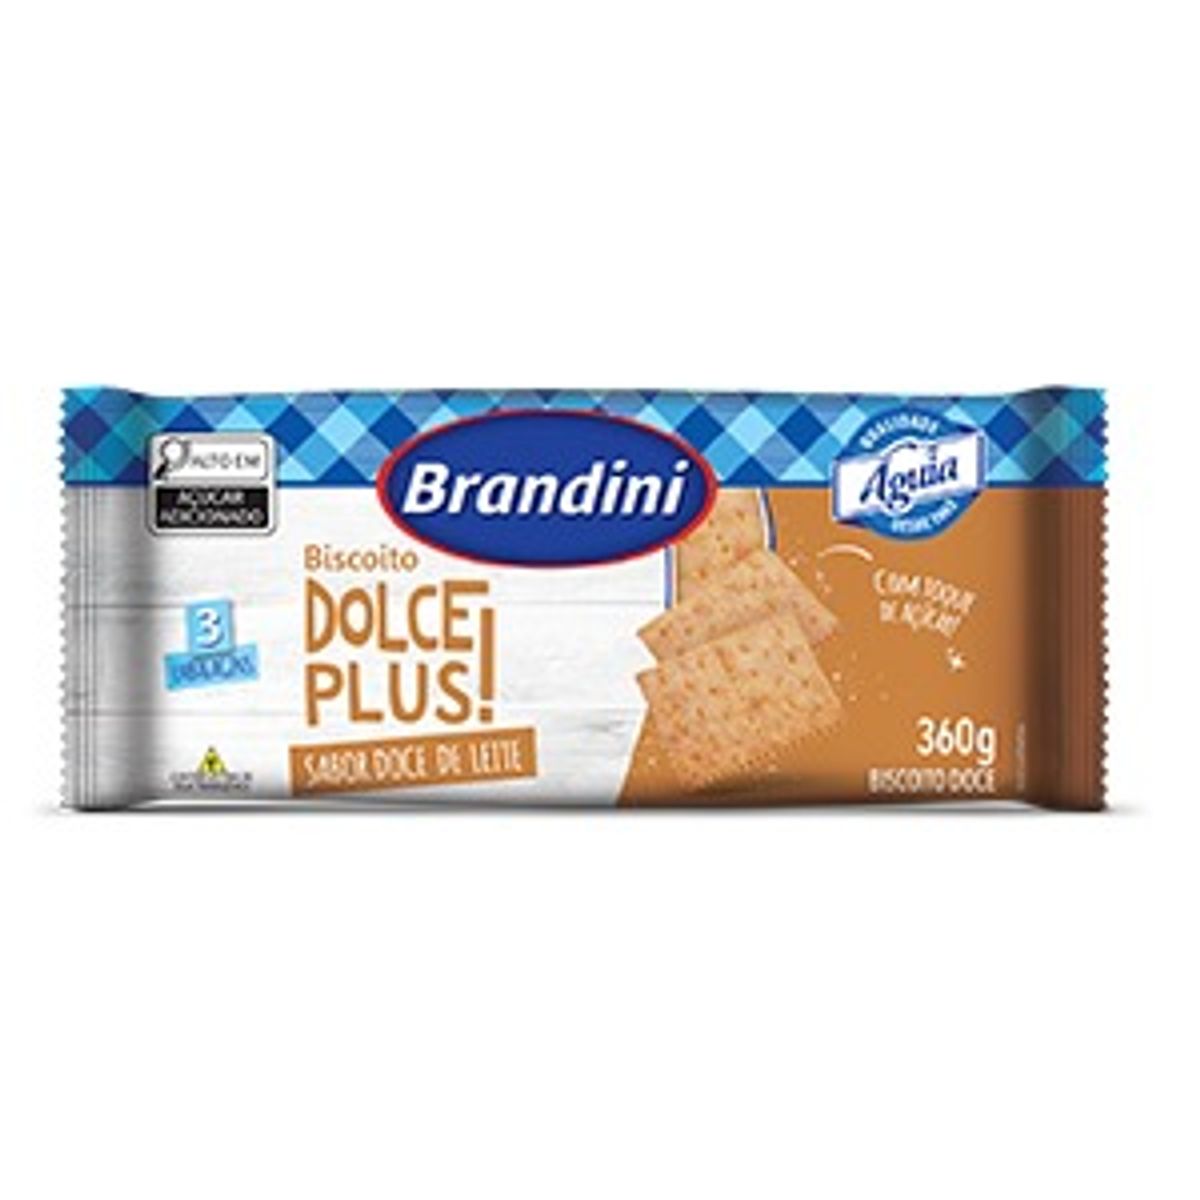 Biscoito Brandini Dolce Plus Doce de Leite 360g